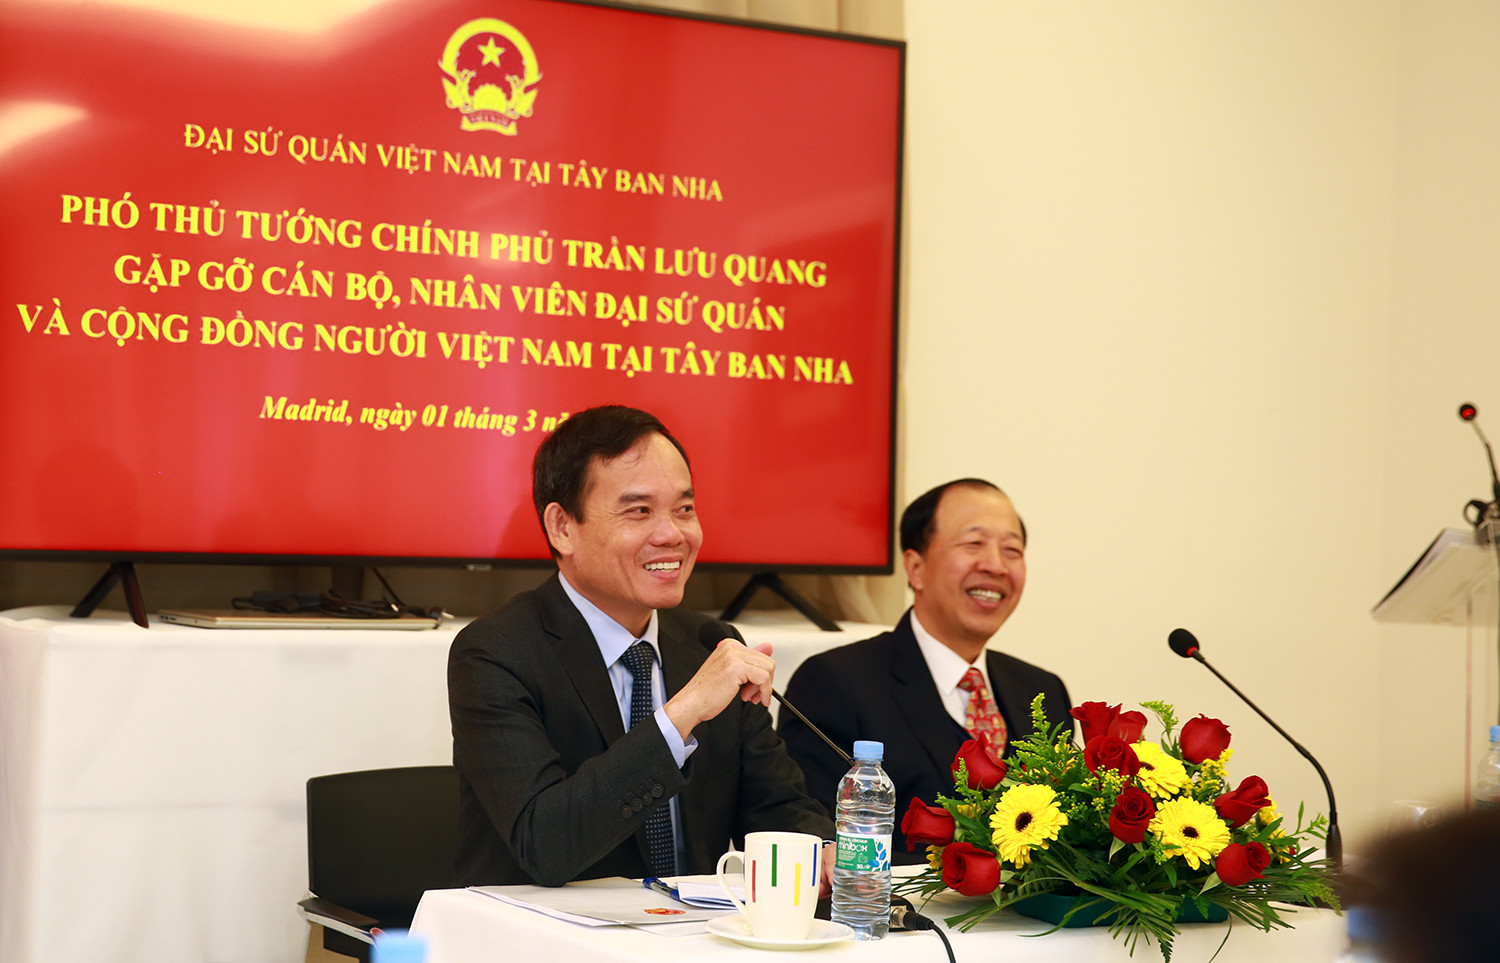 Phó Thủ tướng Trần Lưu Quang hội kiến Chủ tịch Hạ viện Tây Ban Nha, gặp gỡ thân mật kiều bào - Ảnh 4.